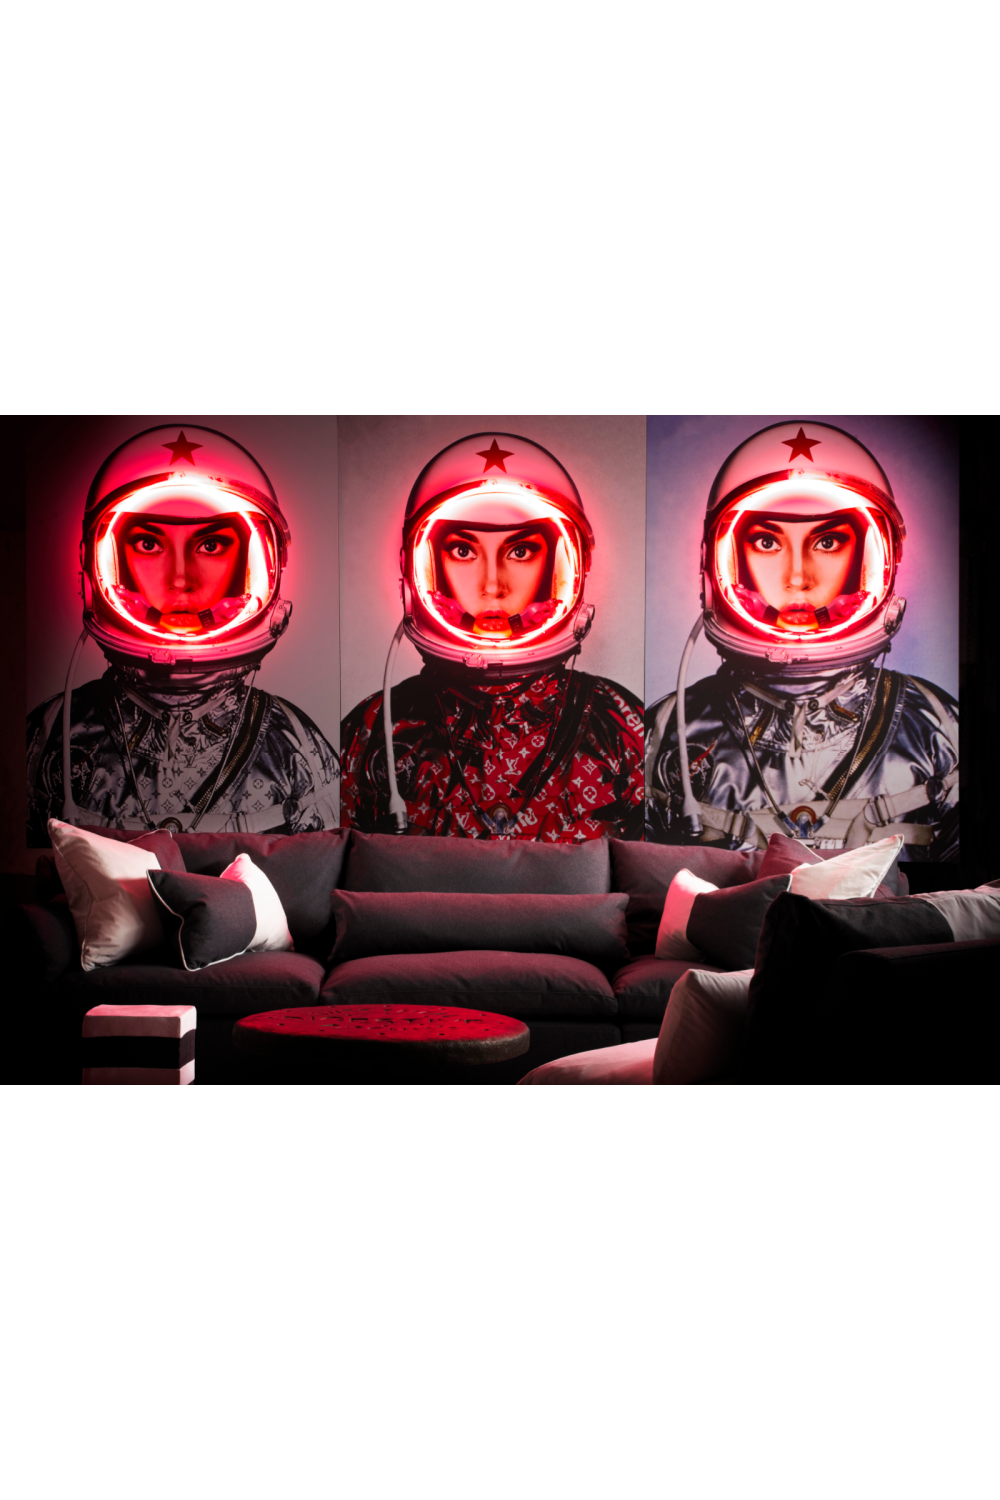 Red Louis Vuitton Neon Artwork | Andrew Martin Space Girl Logos | OROA